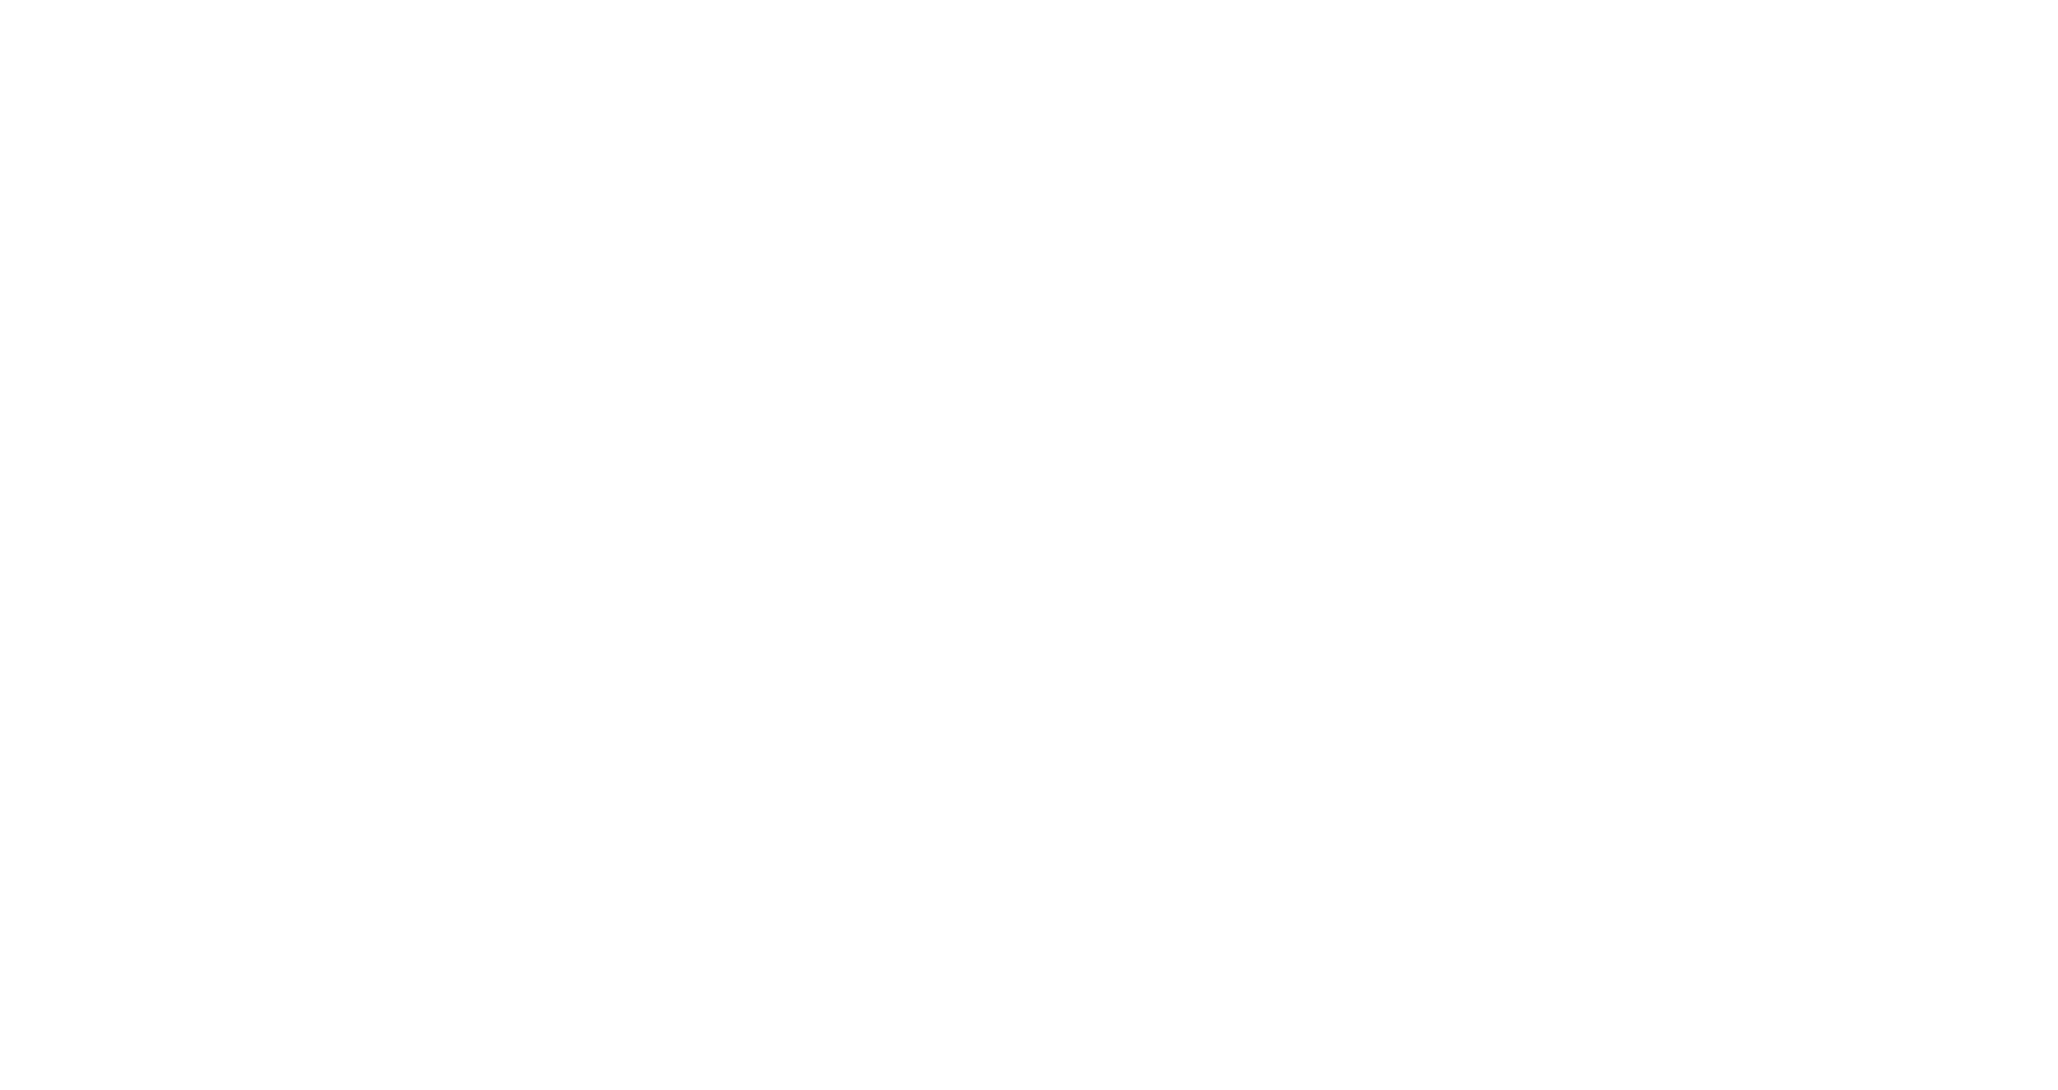 Theater de Veste